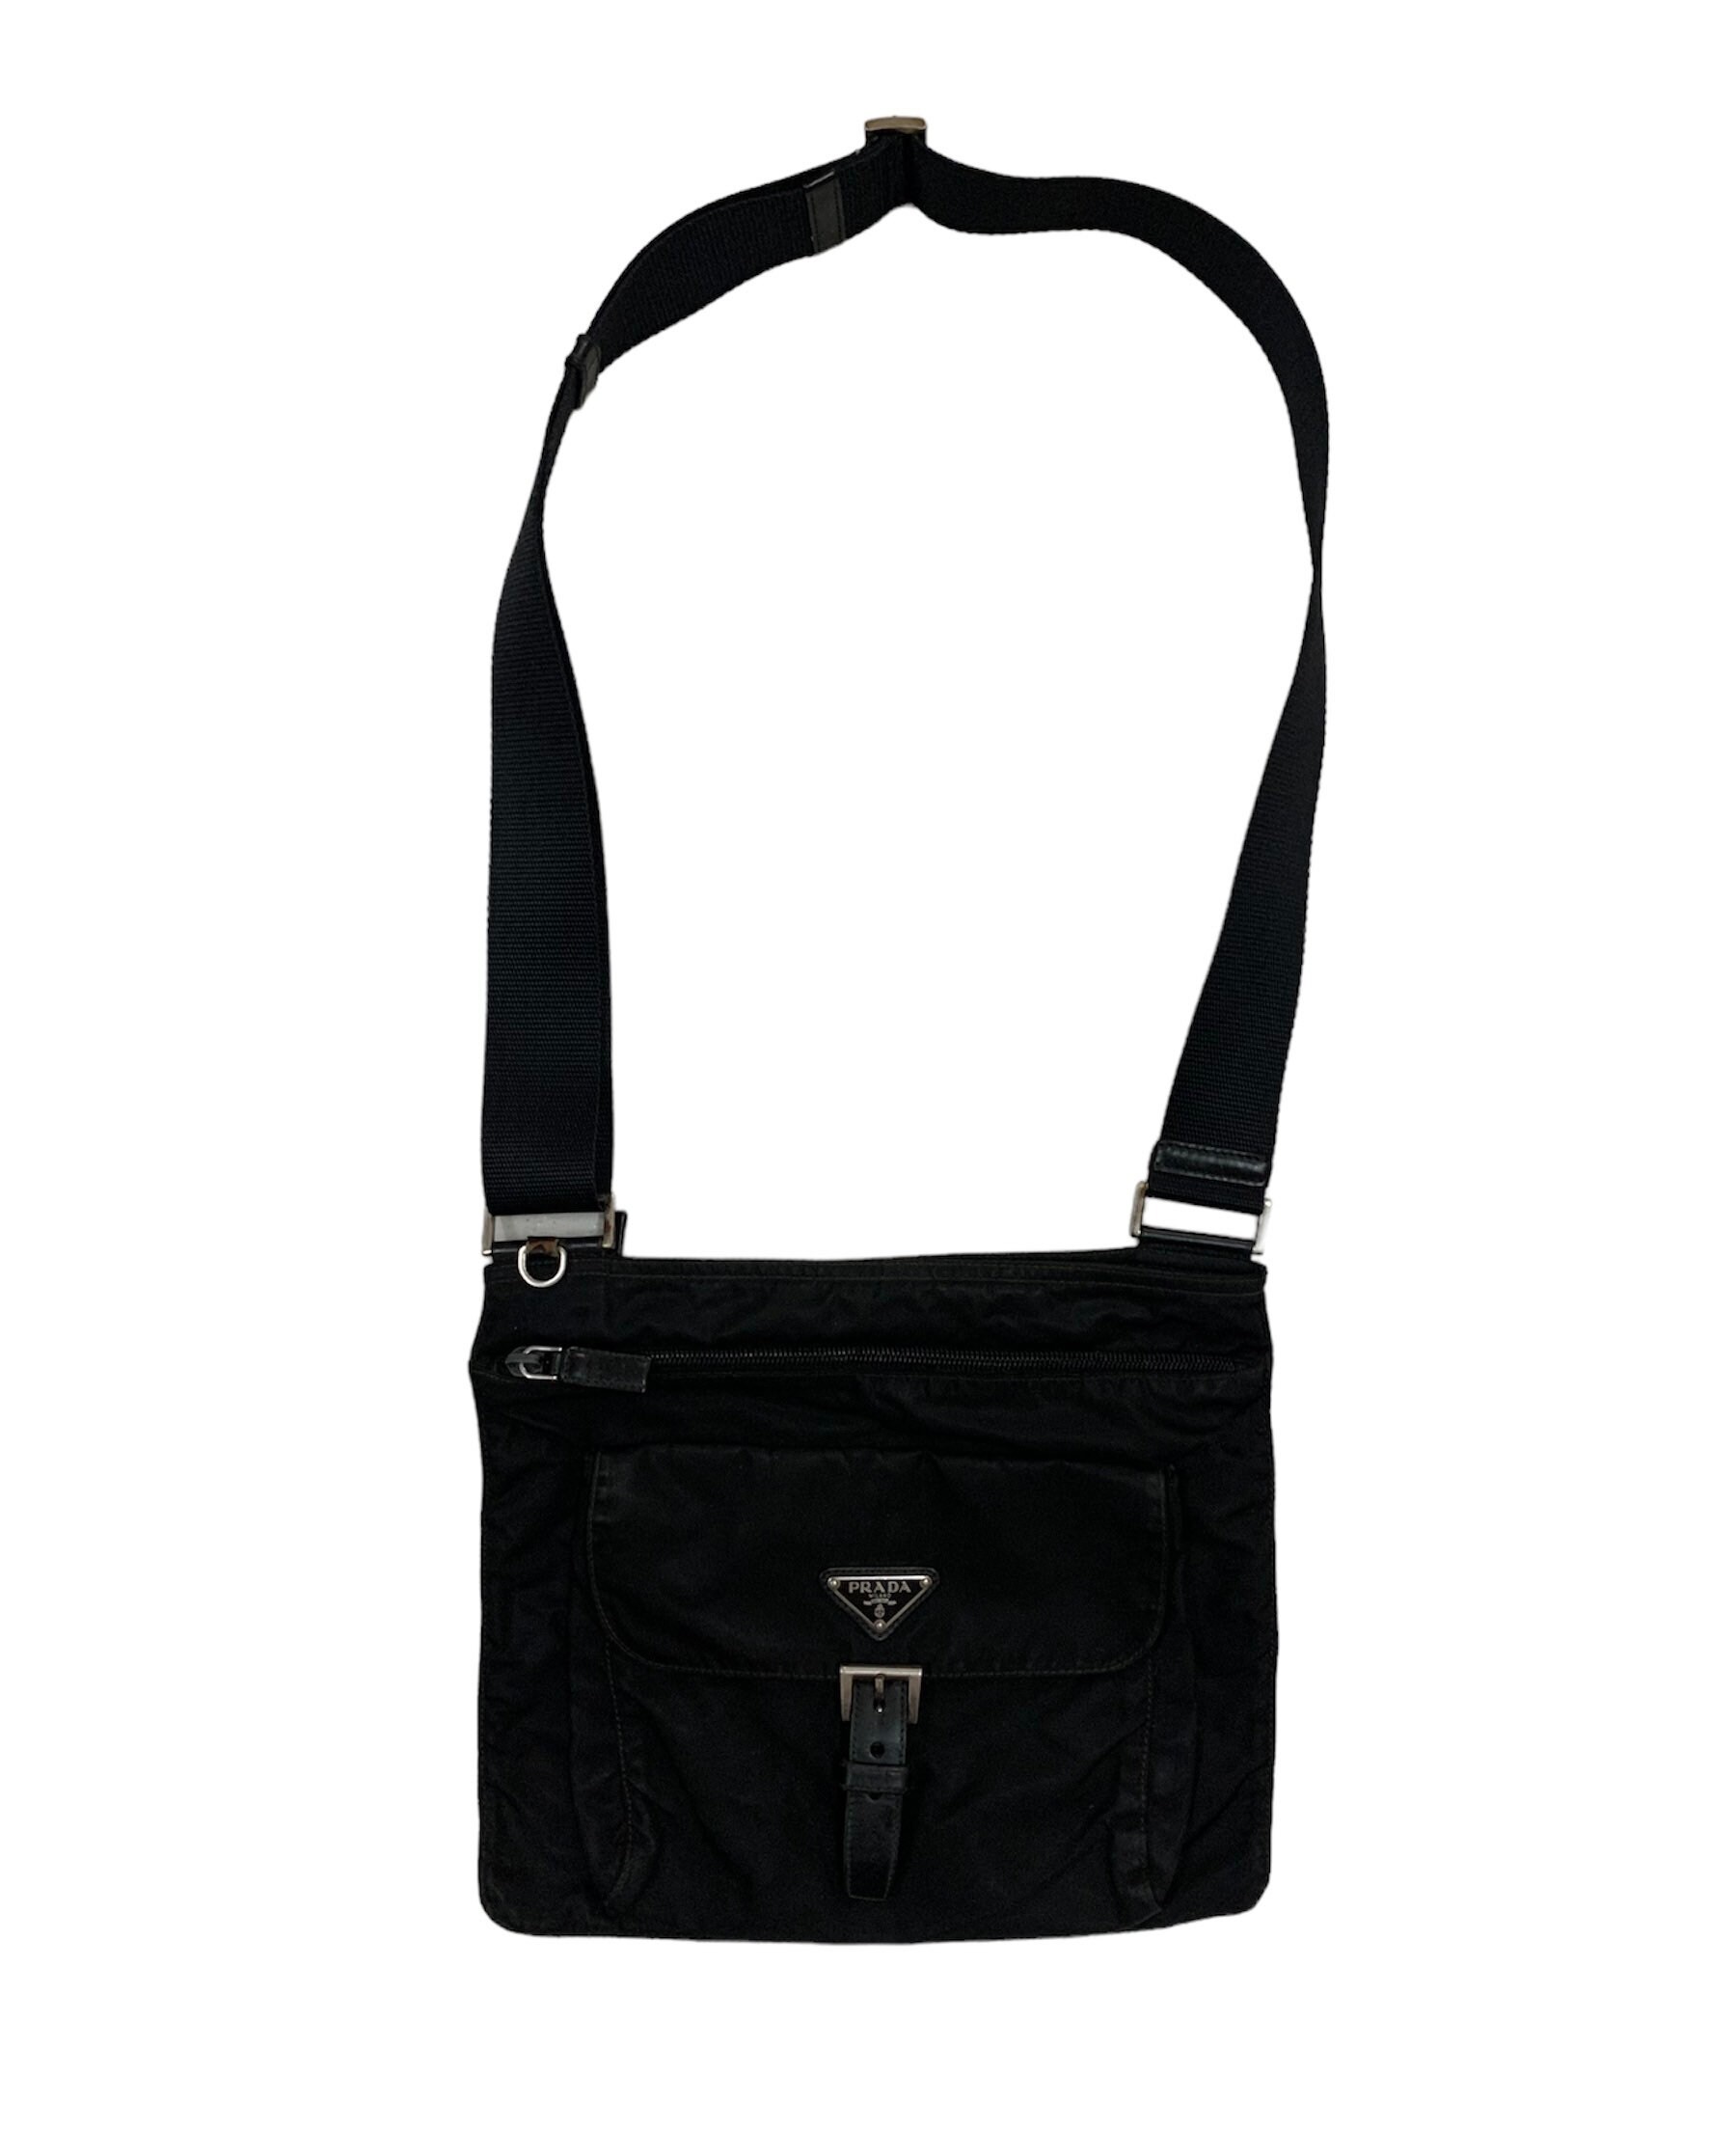 Courrèges - Authenticated Handbag - Black Plain for Women, Good Condition